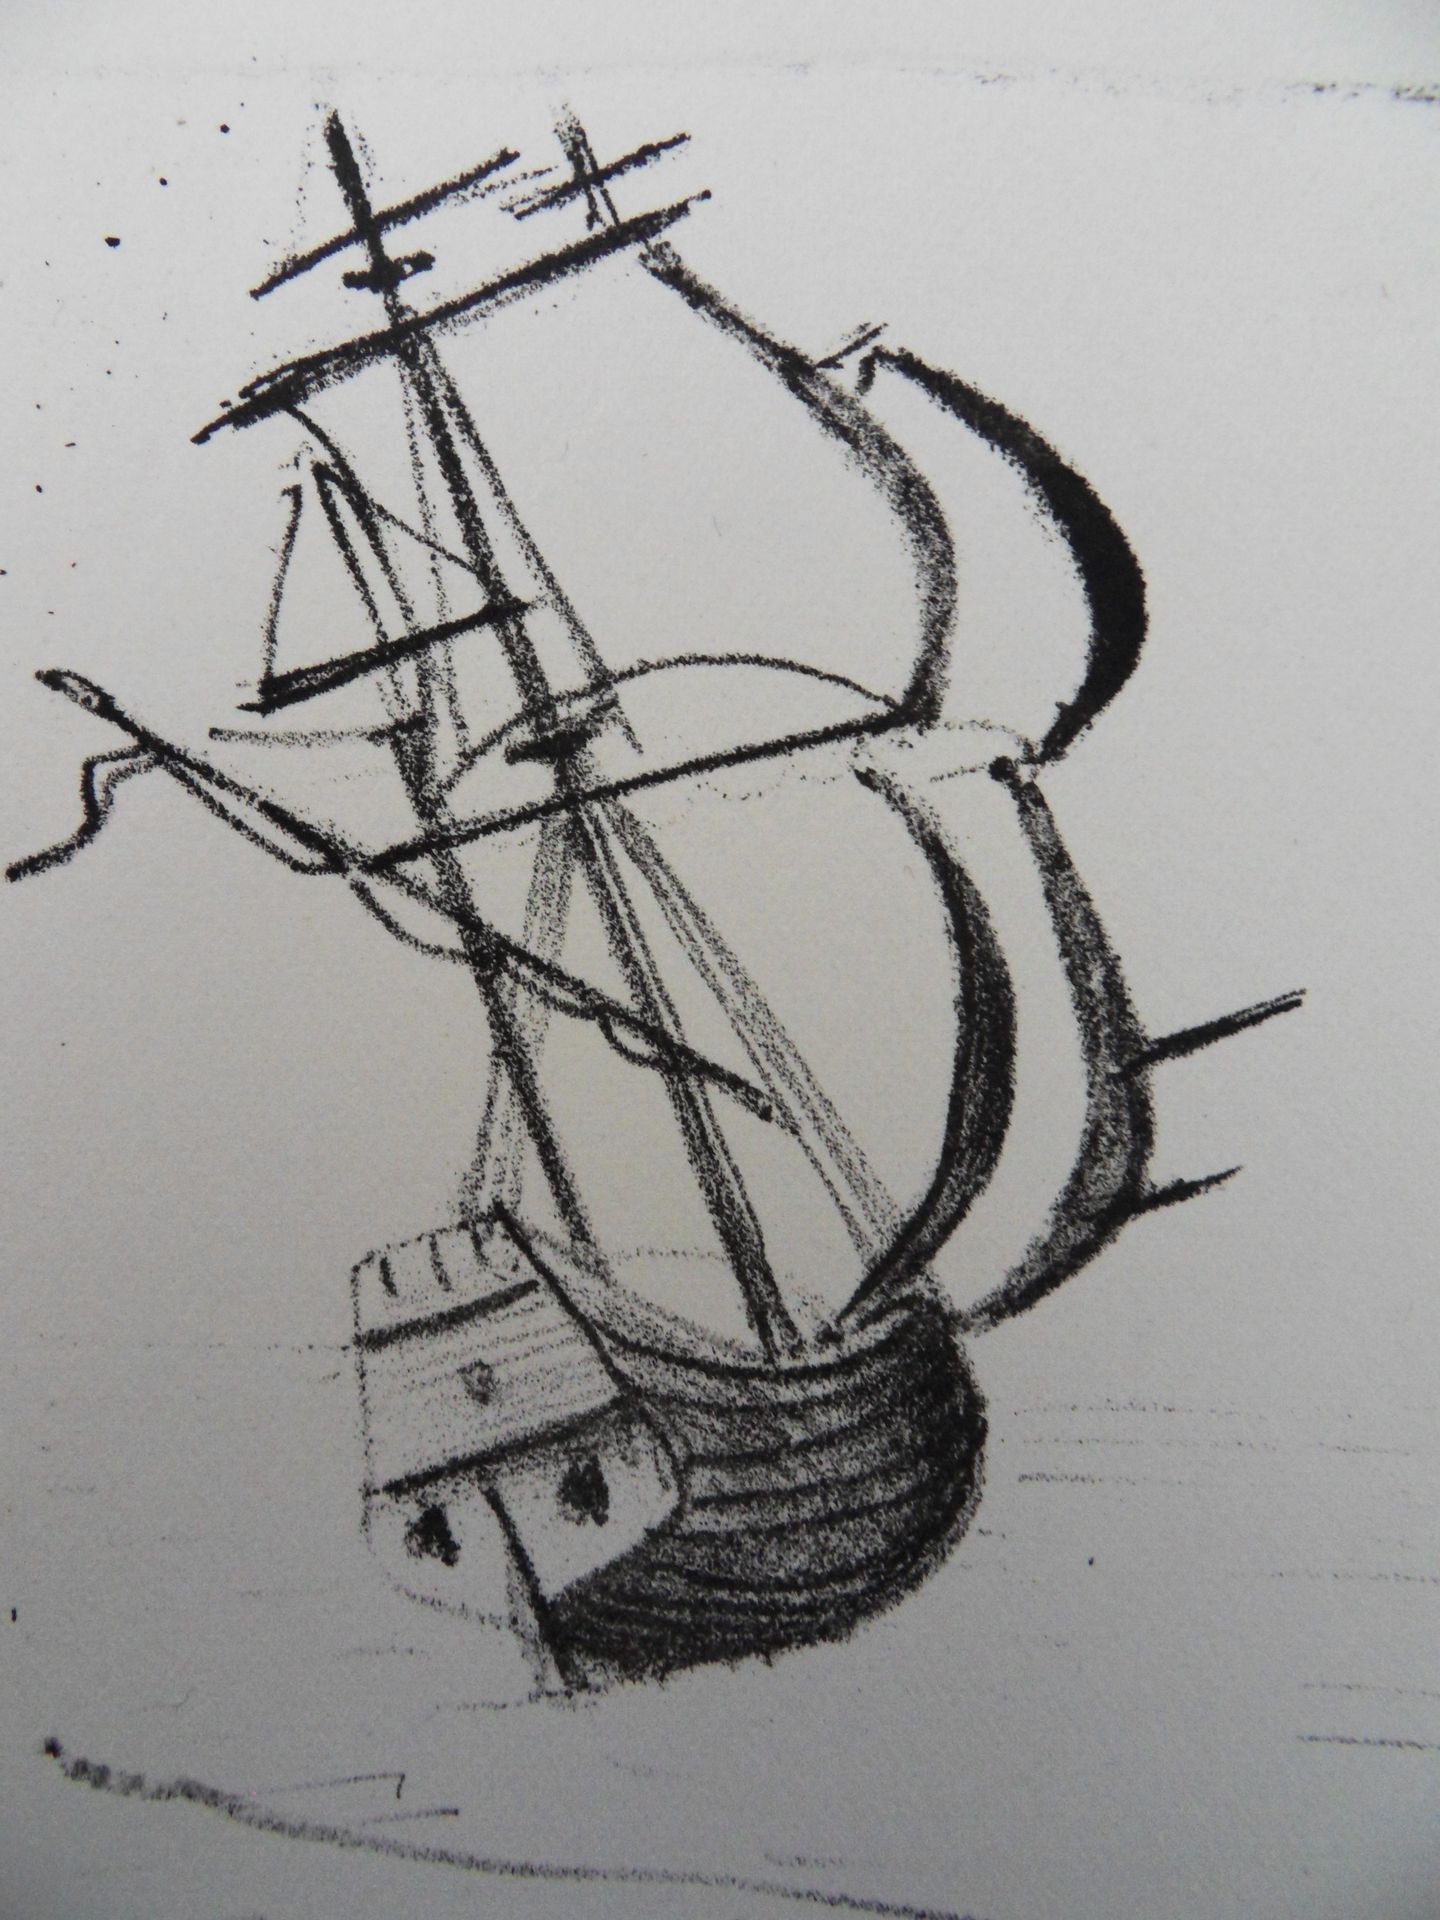 ANDRÉ DERAIN 安德烈-德兰(André DERAIN) (1880-1954)

帆船，La caravelle, 1950

原版石版画（MOUR&hellip;